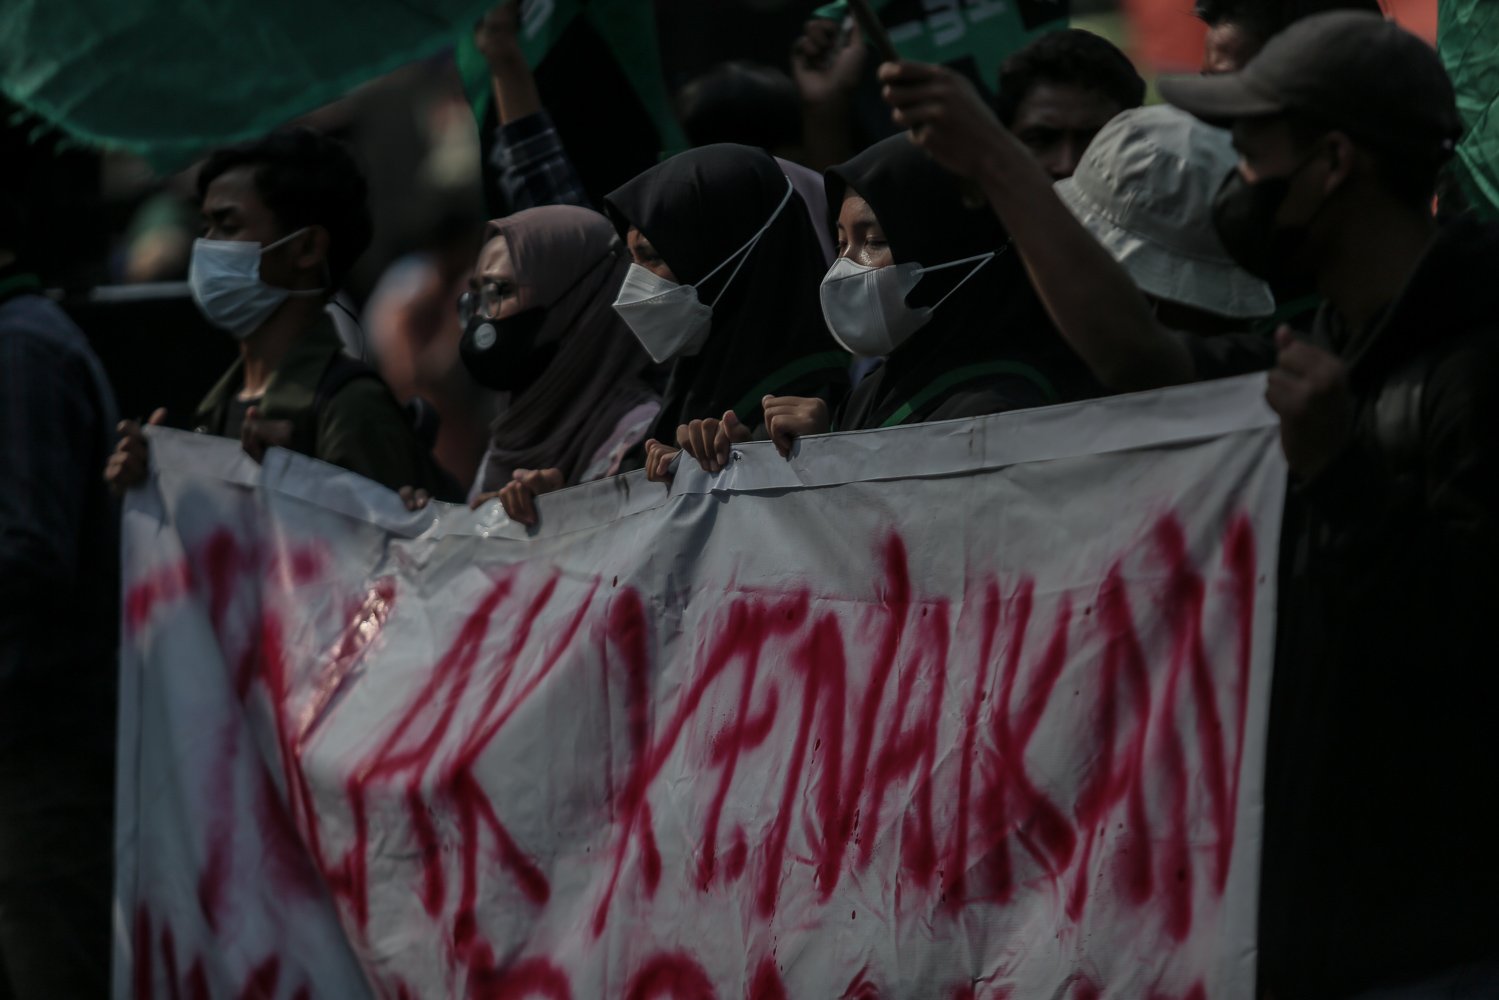 Mahasiswa yang tergabung dalam Himpunan Mahasiswa Islam (HMI) menggelar aksi unjuk rasa di depan Komplek Parlemen, Jakarta, Selasa (6/9). Dalam aksinya, mereka menolak keputusan pemerintah menaikkan harga Bahan Bakar Minyak (BBM) bersubsidi dan menghimbau pemerintah untuk meninjau ulang keputusan tersebut.